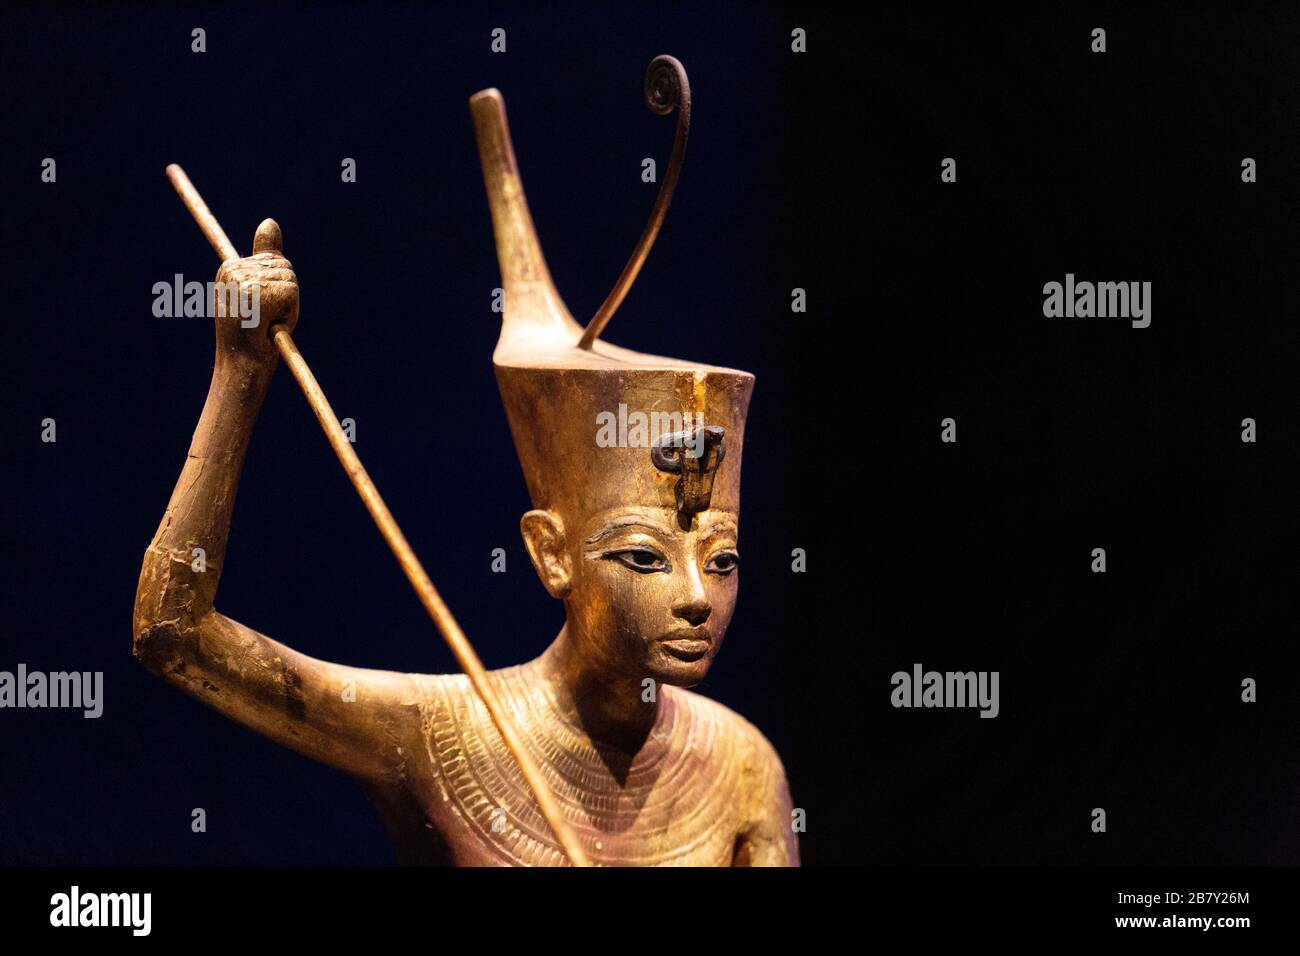 Statua di Tutankhamun; particolare della statua in legno dorato di Tutankhamon in piedi su uno sci; tesori dalla tomba di Tutankhamuns. Antichi tesori dell'Egitto Foto Stock